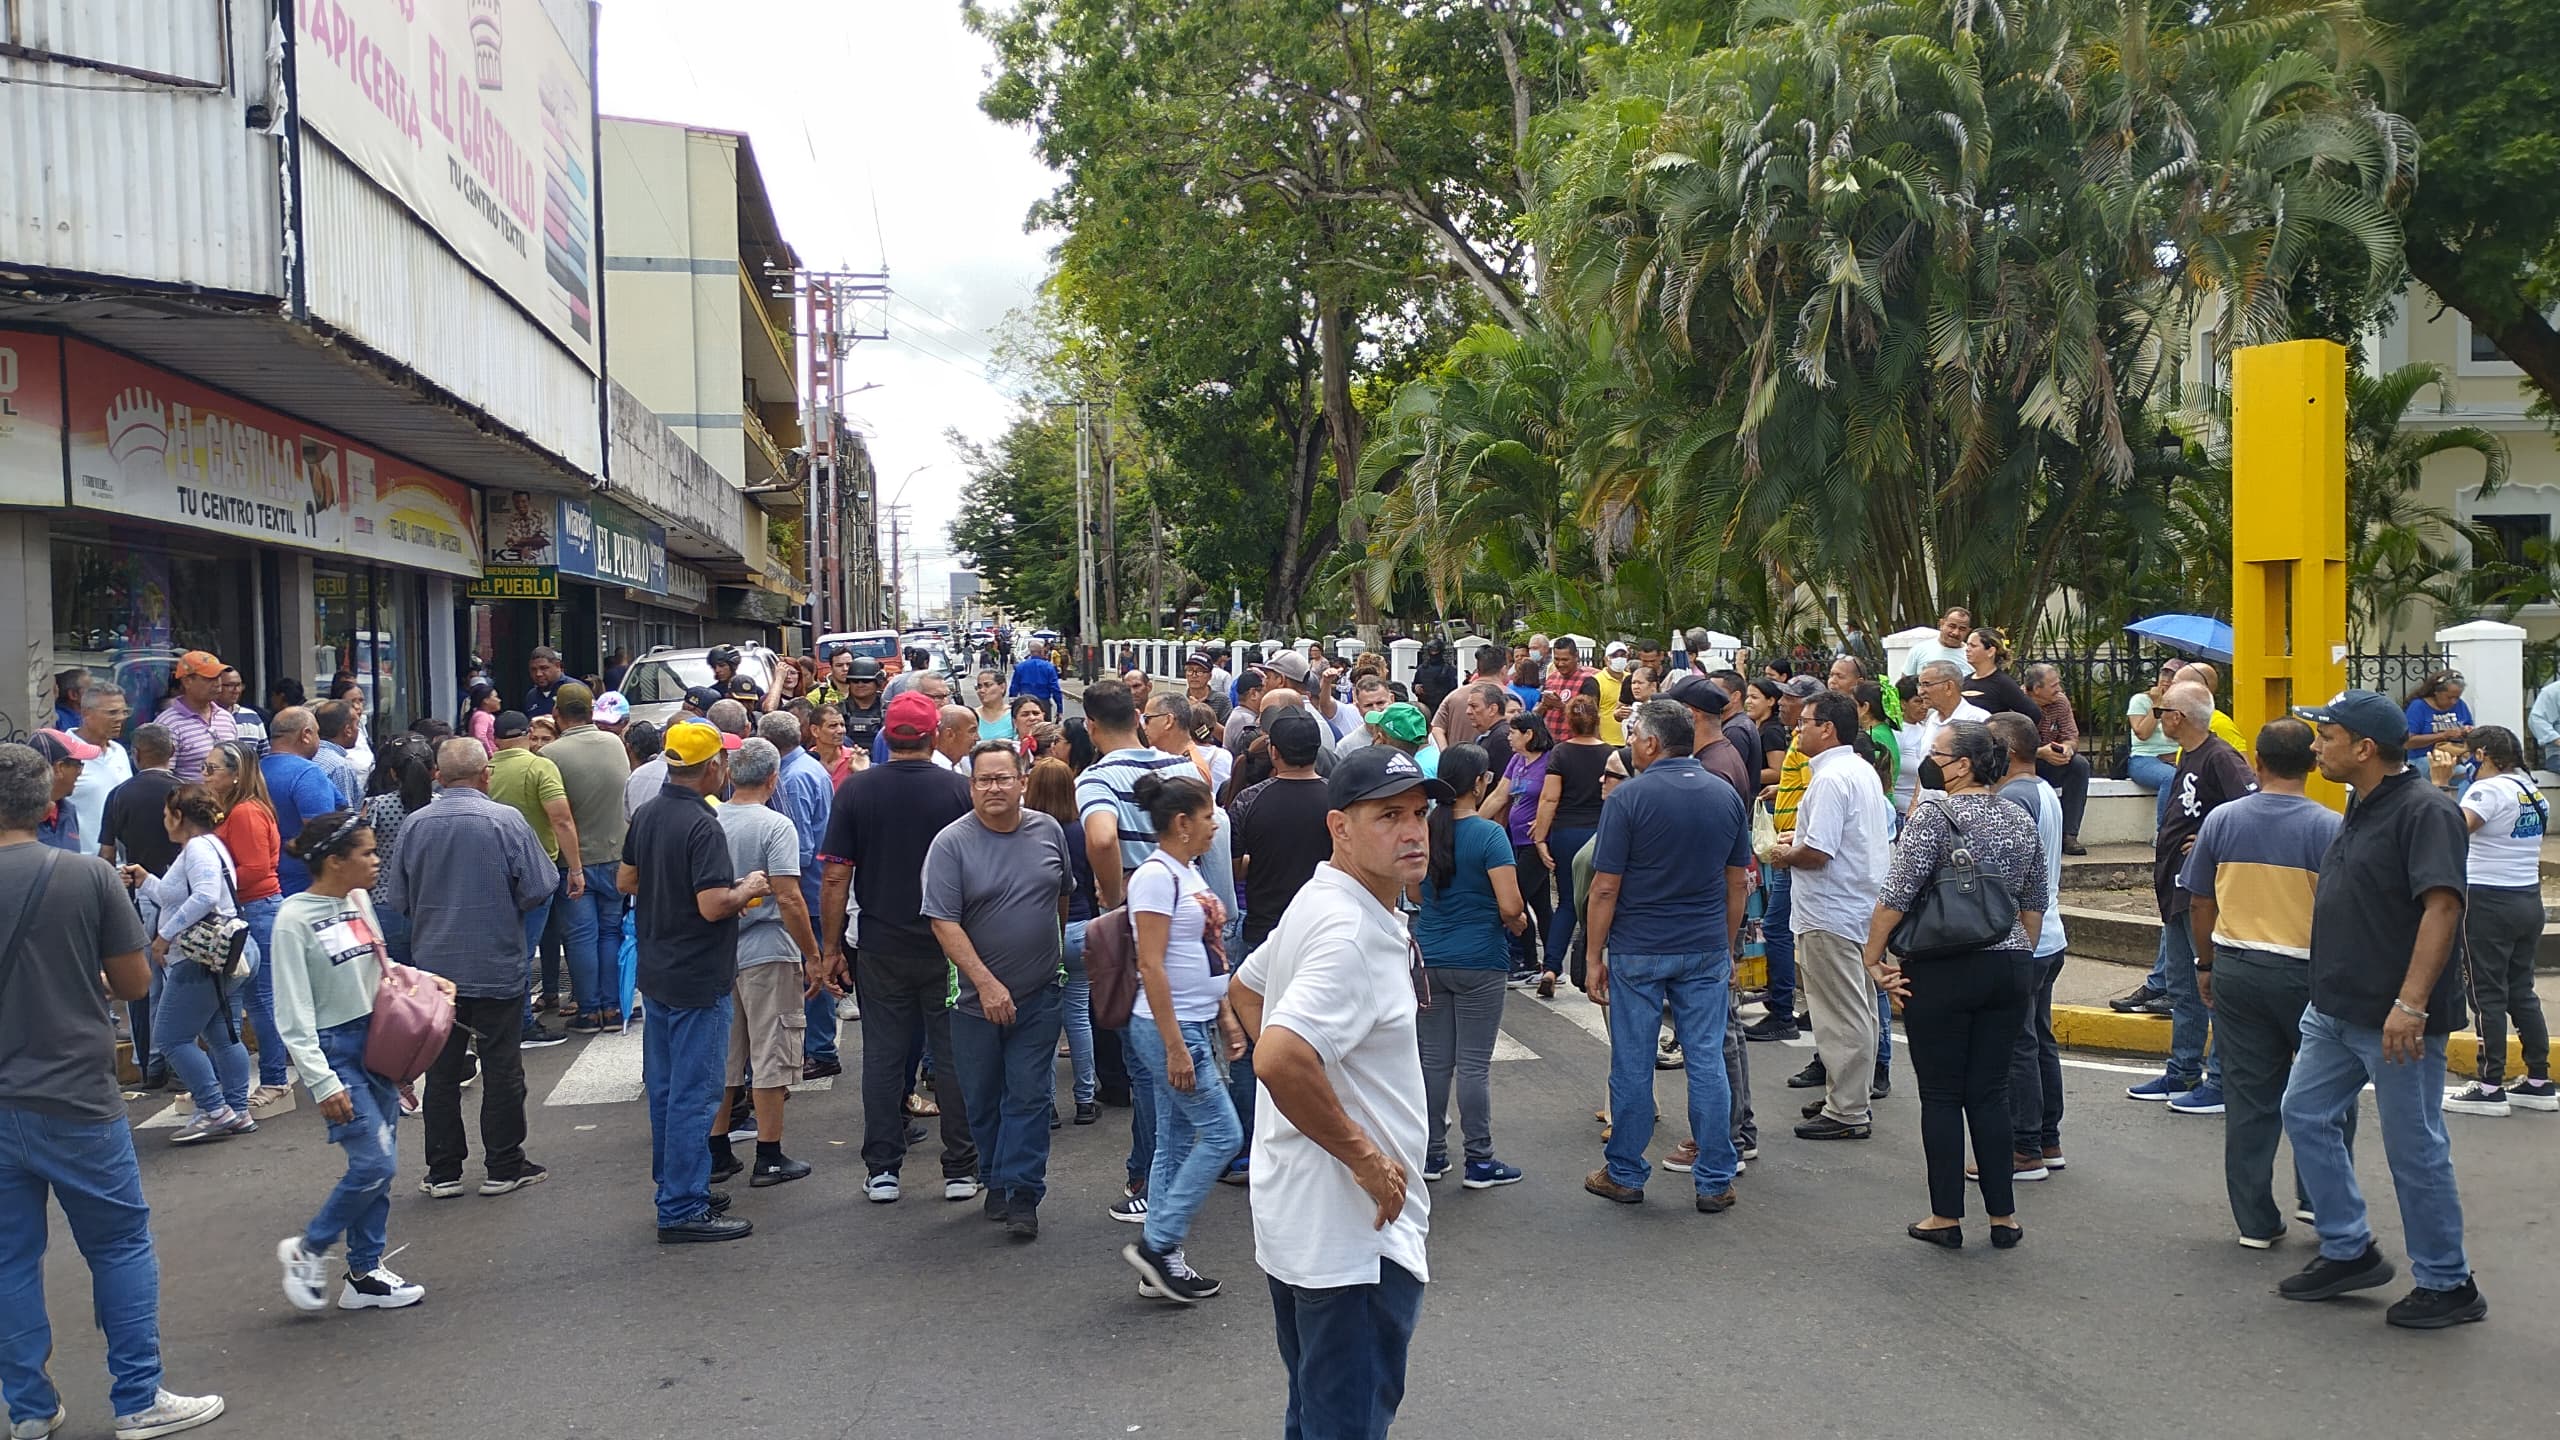 Conductores protestaron frente a la gobernación de Monagas por irregularidades en la distribución de combustible